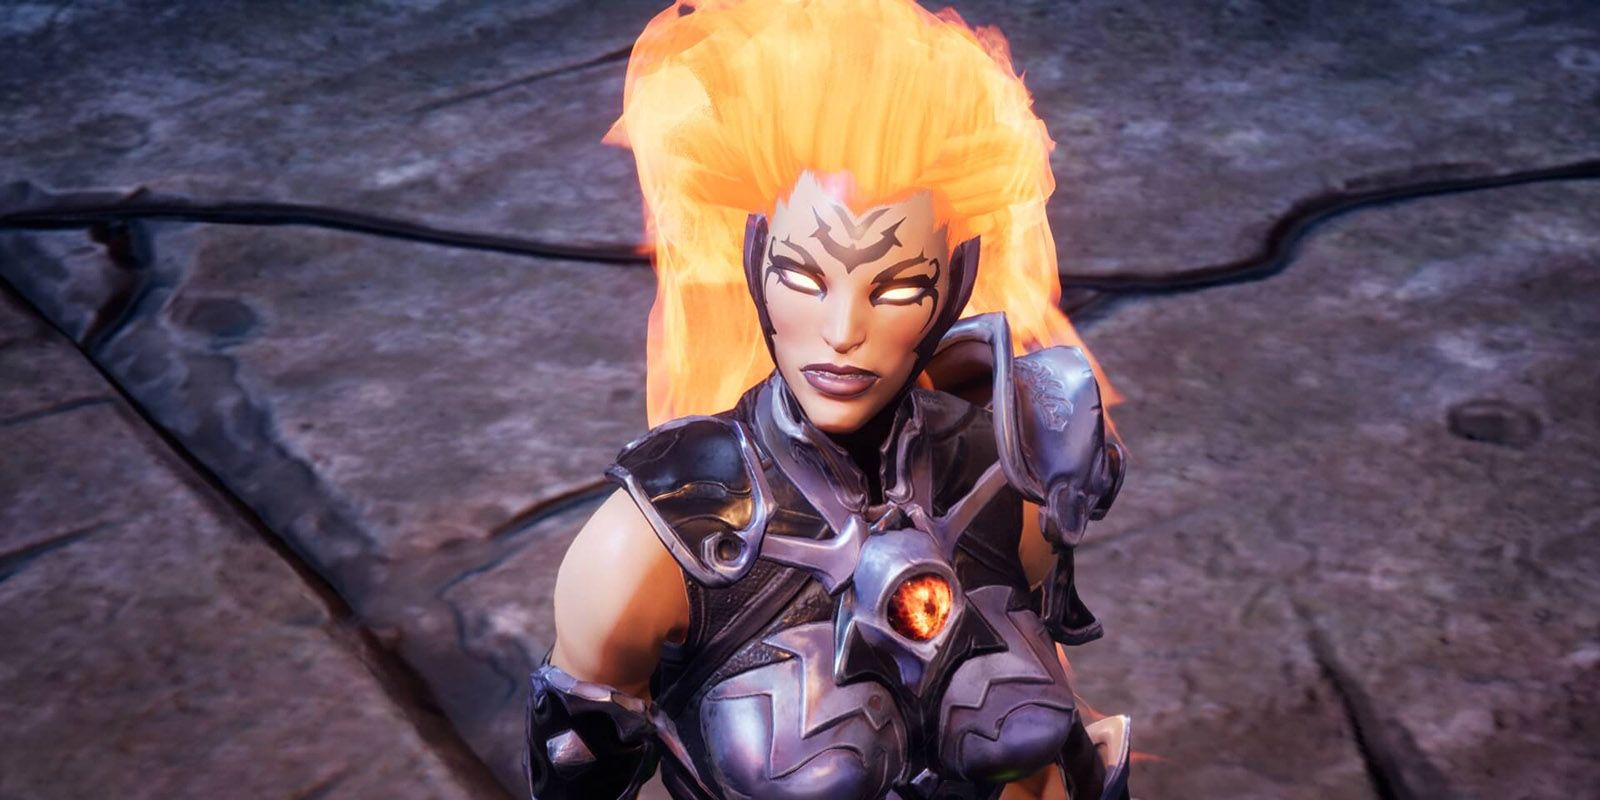 Darksiders 3 Fury looking up with hair and eyes glowing orange